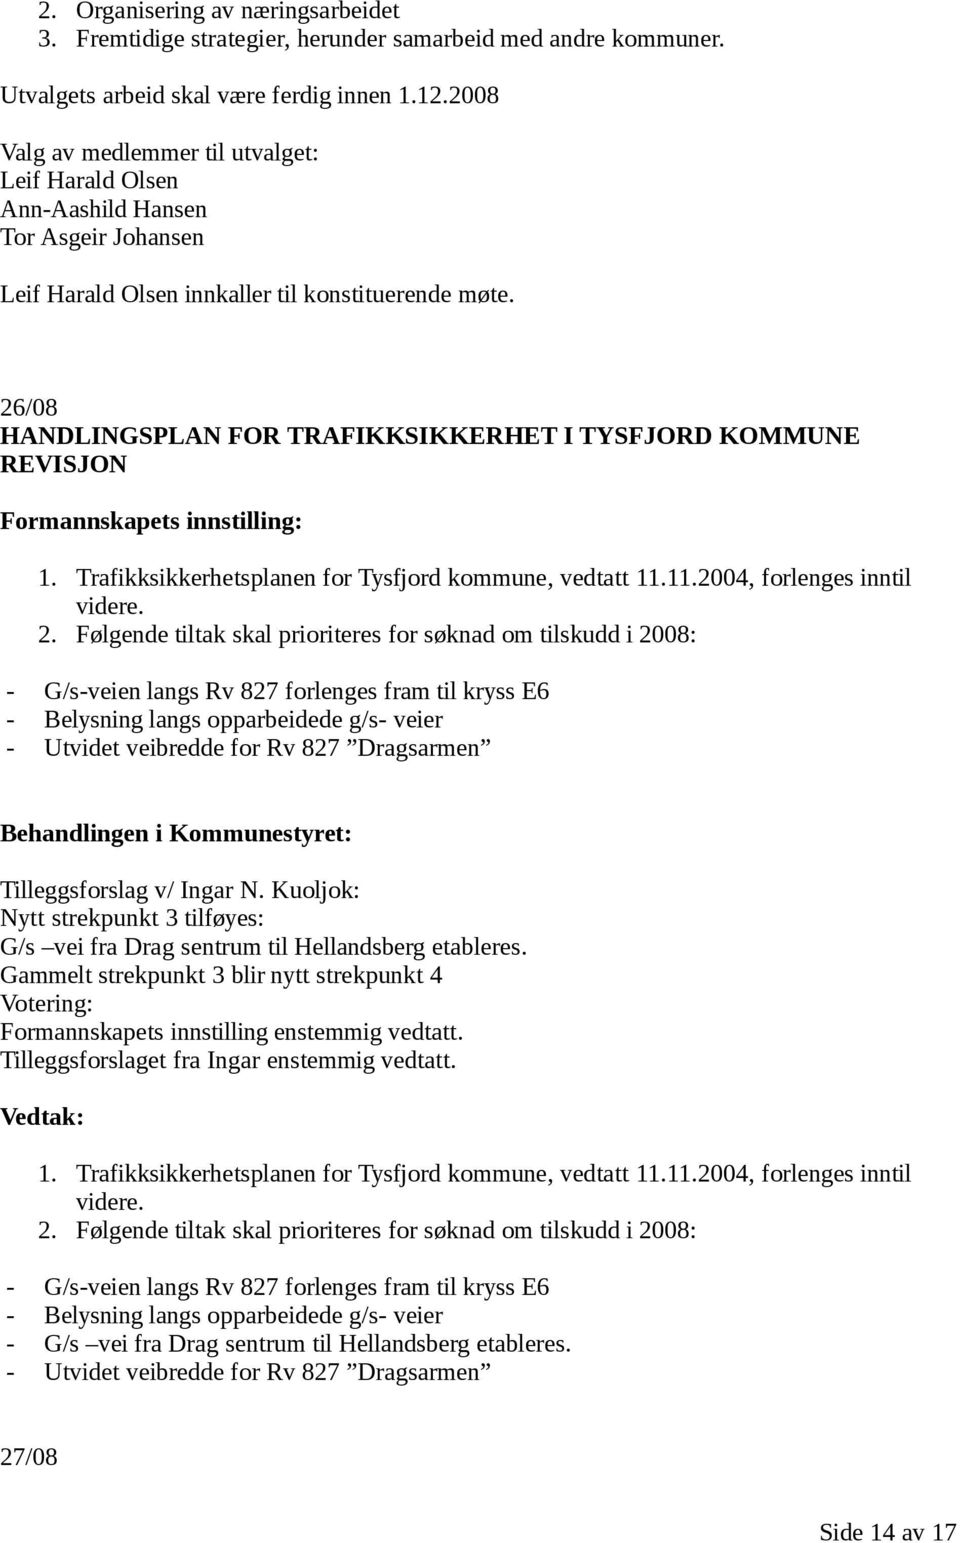 26/08 HANDLINGSPLAN FOR TRAFIKKSIKKERHET I TYSFJORD KOMMUNE REVISJON 1. Trafikksikkerhetsplanen for Tysfjord kommune, vedtatt 11.11.2004, forlenges inntil videre. 2.